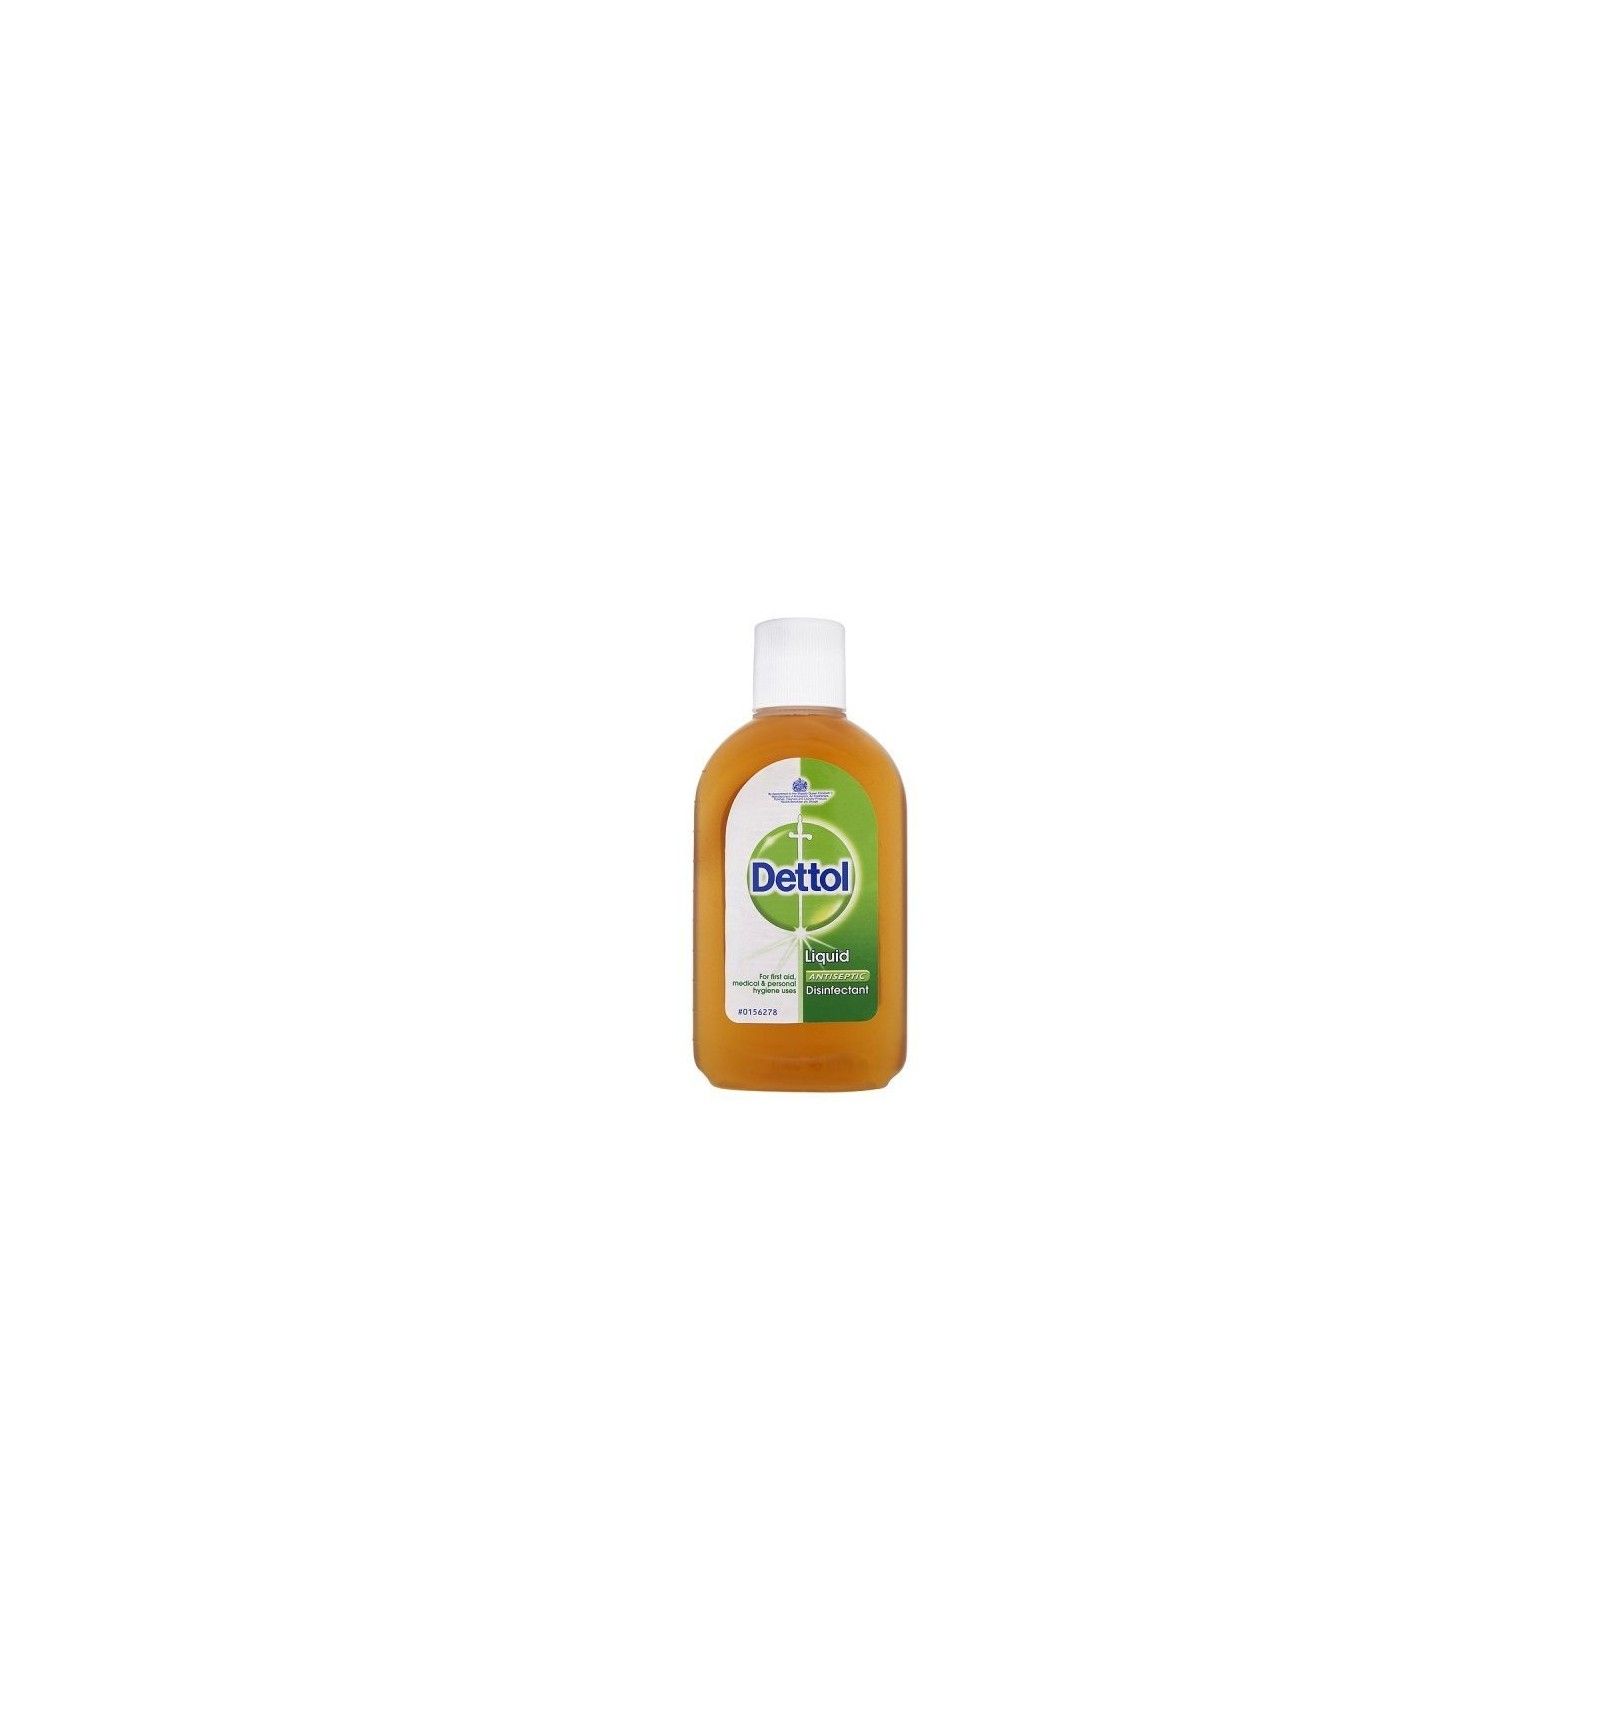 Dettol Original Liquid Antiseptic Disinfectant - 250ml